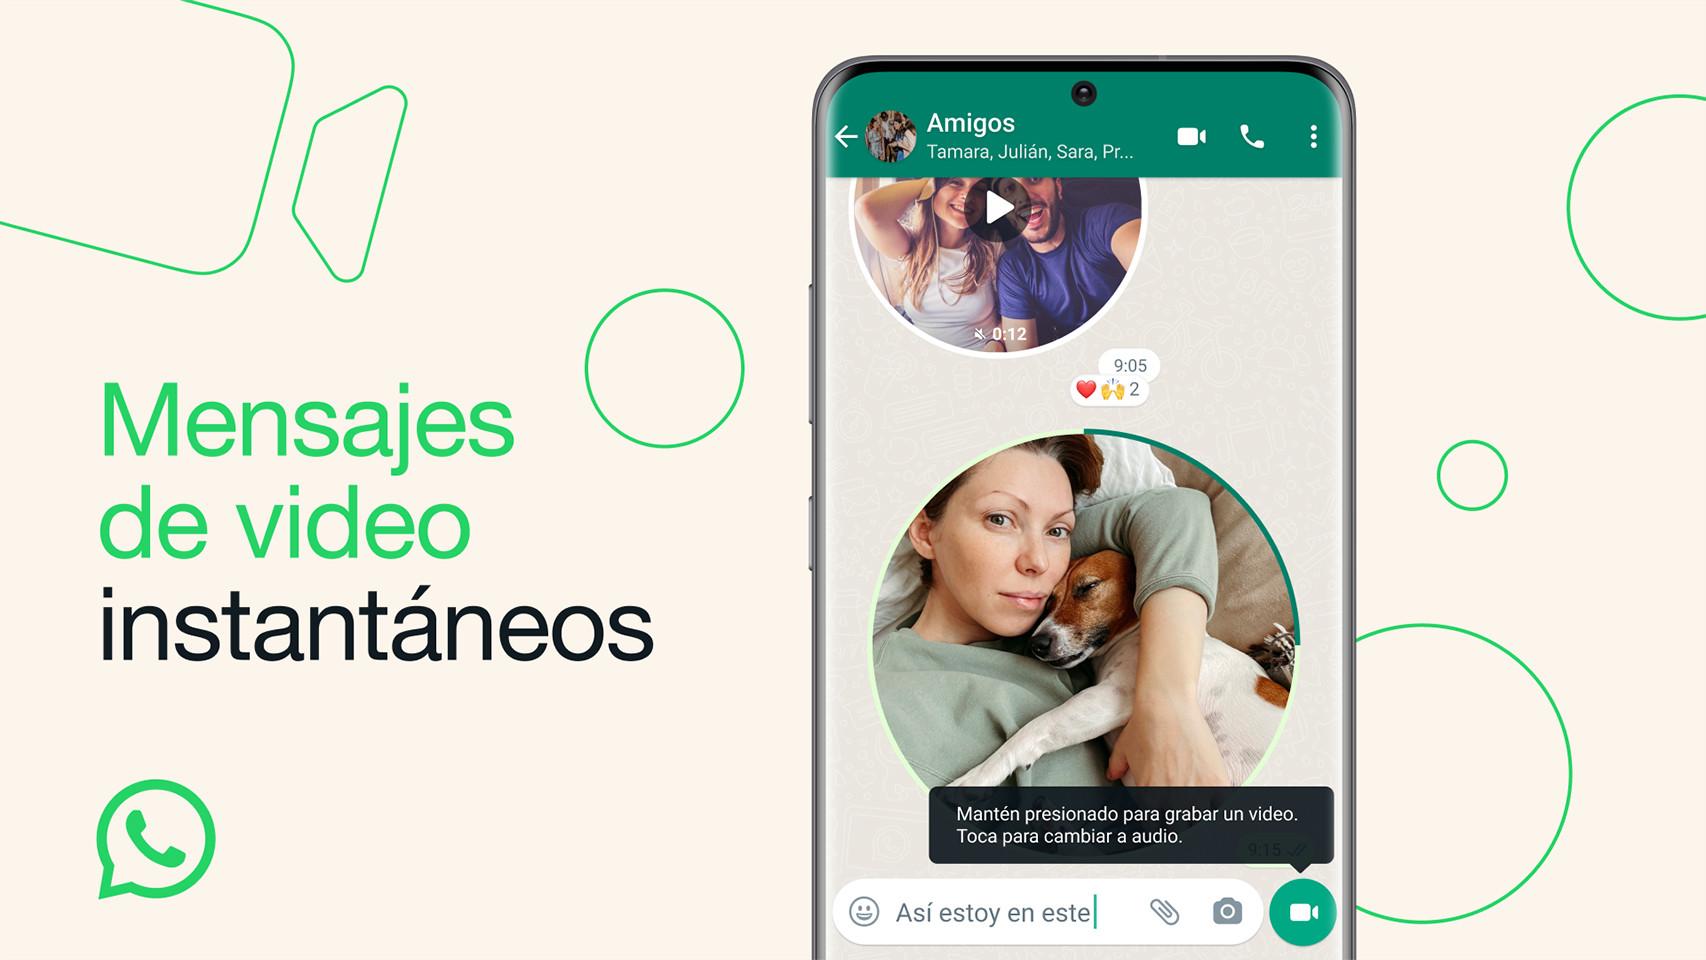 WhatsApp llega relojes Android con envío de notas de voz